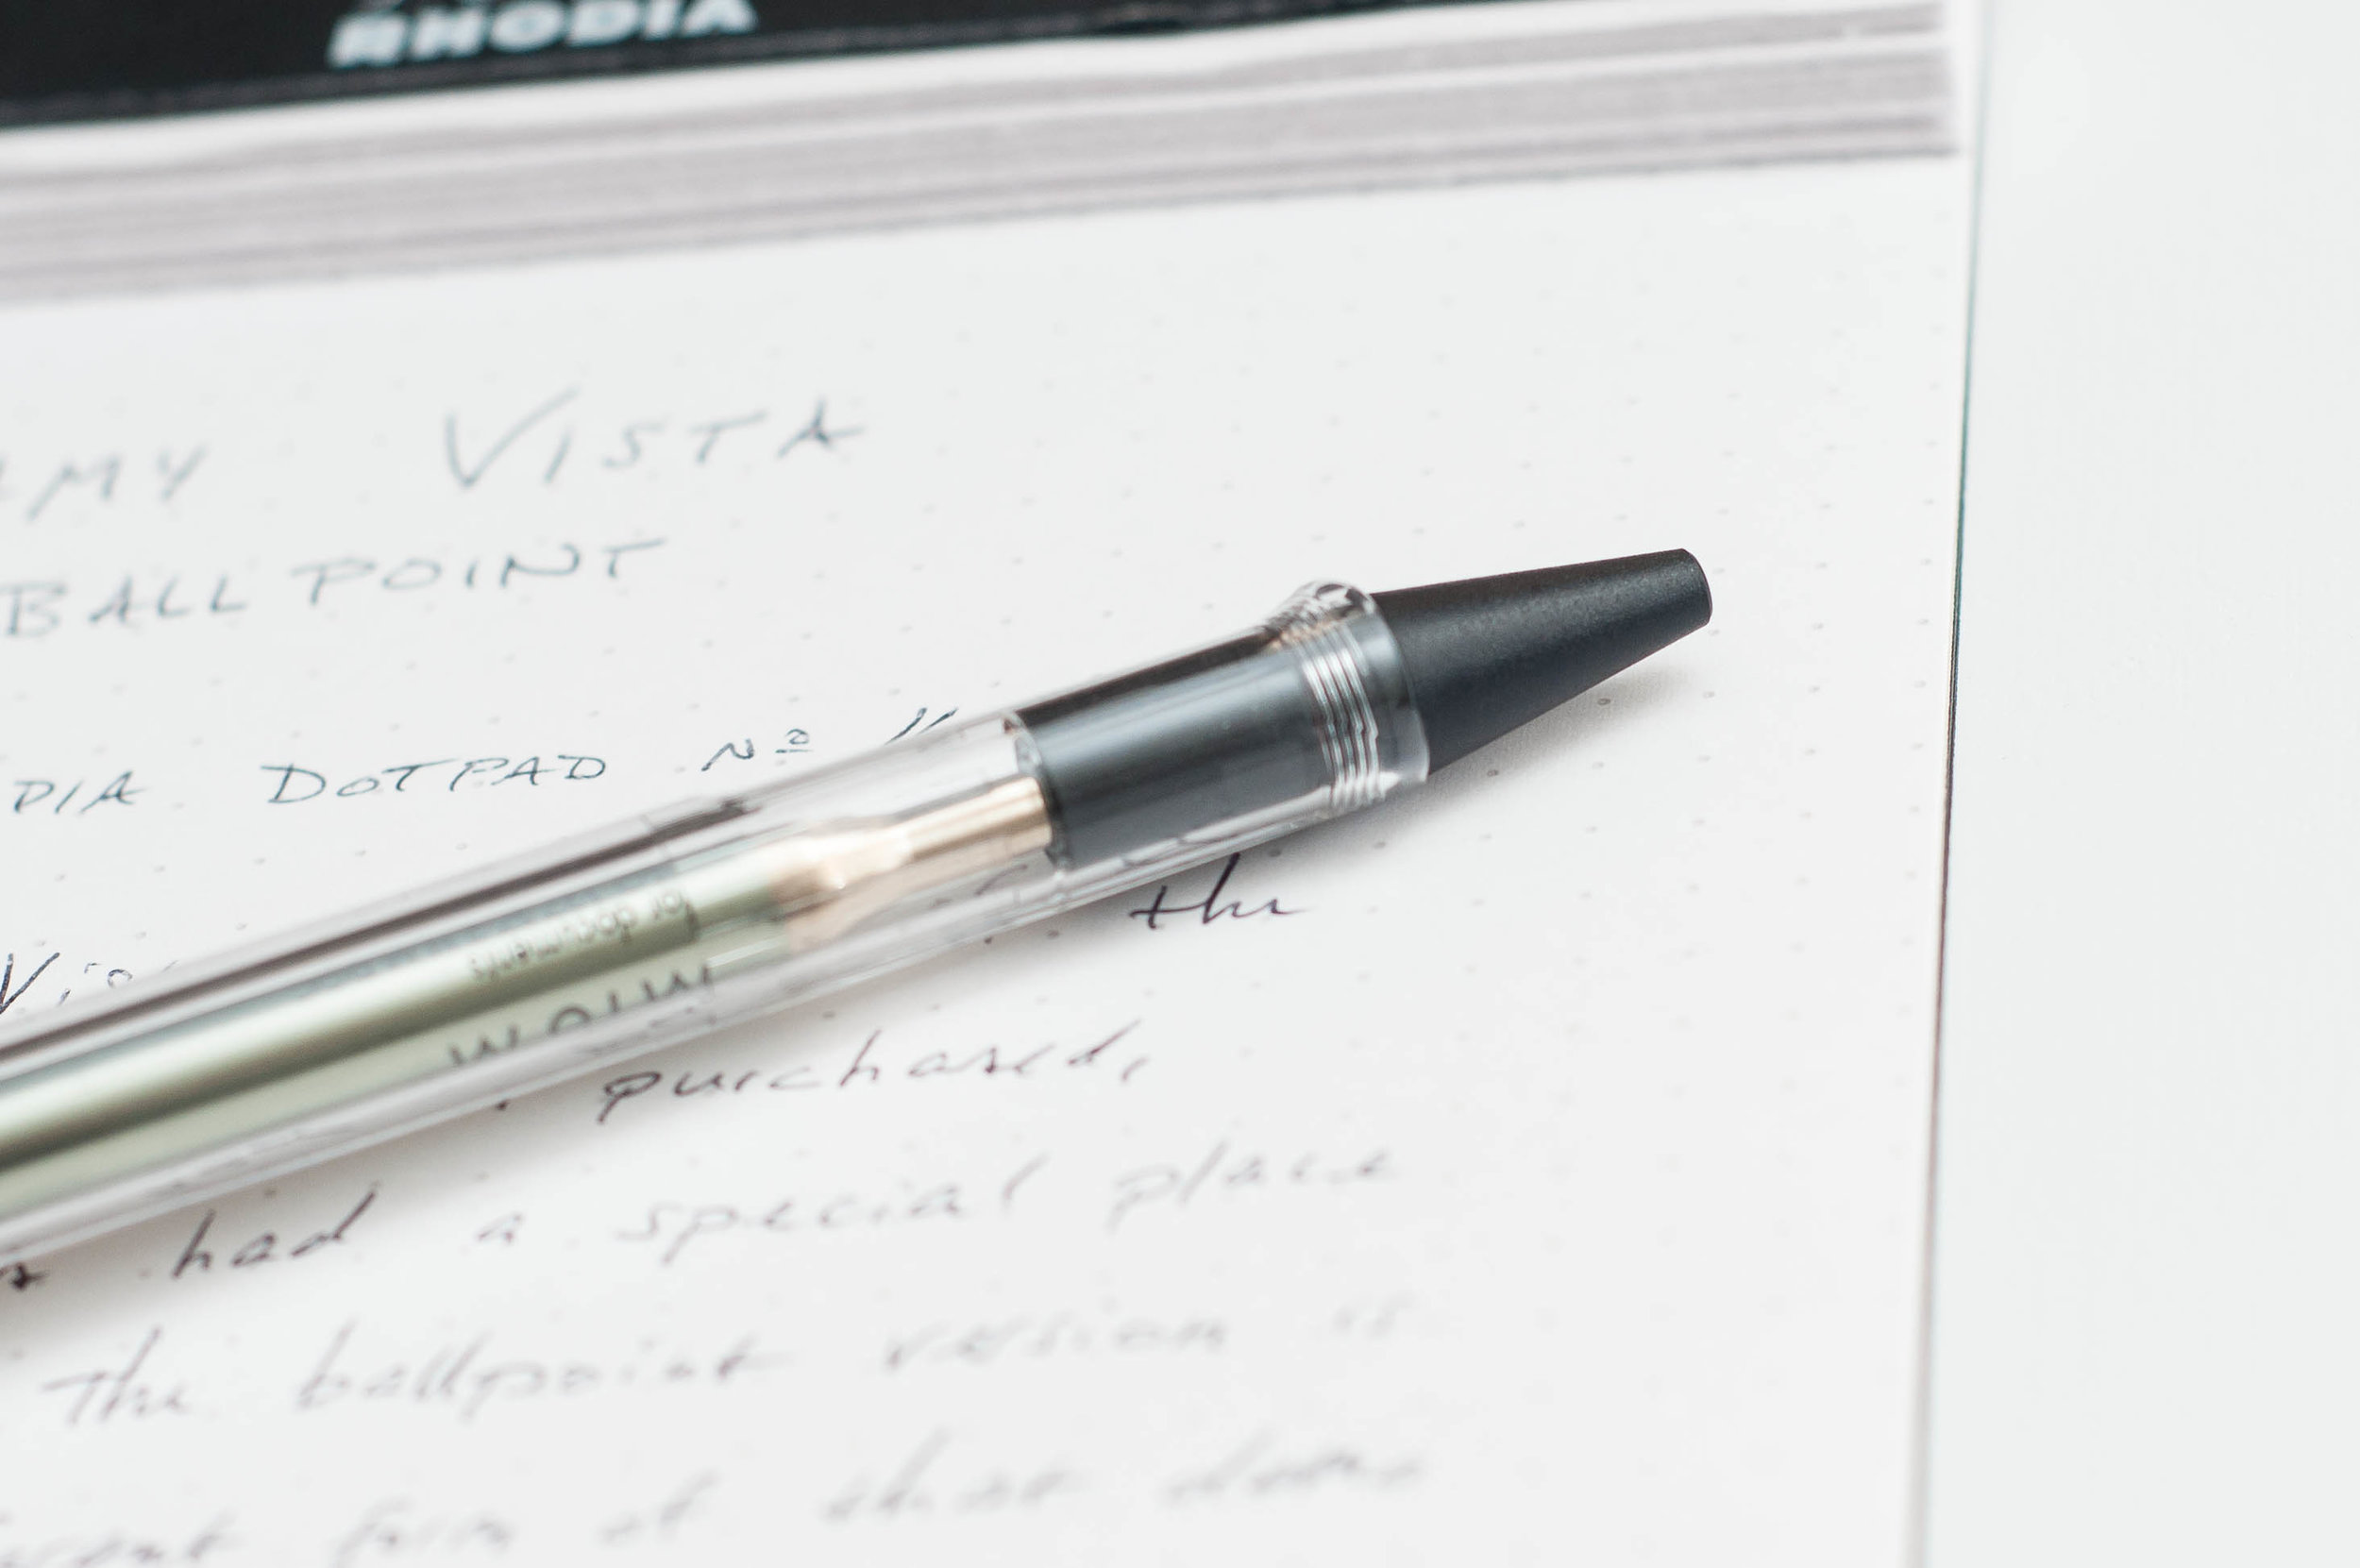 Pilot Hi-Tec-C 03 Gel Ink Pen, Micro Fine Point 0.3mm, Black Ink, 5-Pack, Sticky Notes Value Set